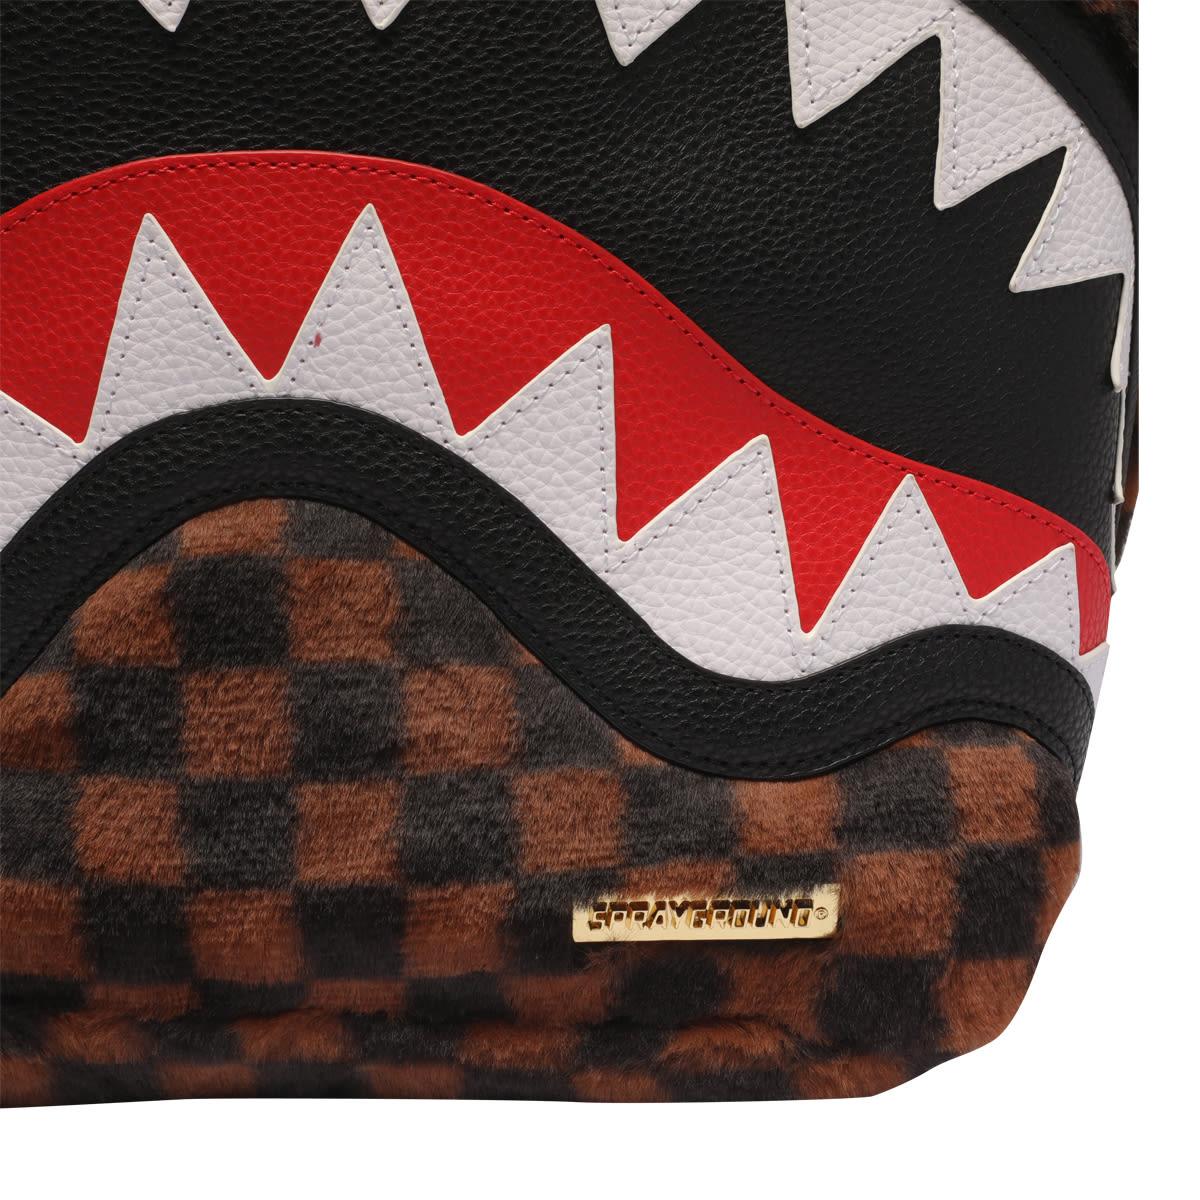 SPRAYGROUND: Fur Sharks in Paris Checkered Backpack